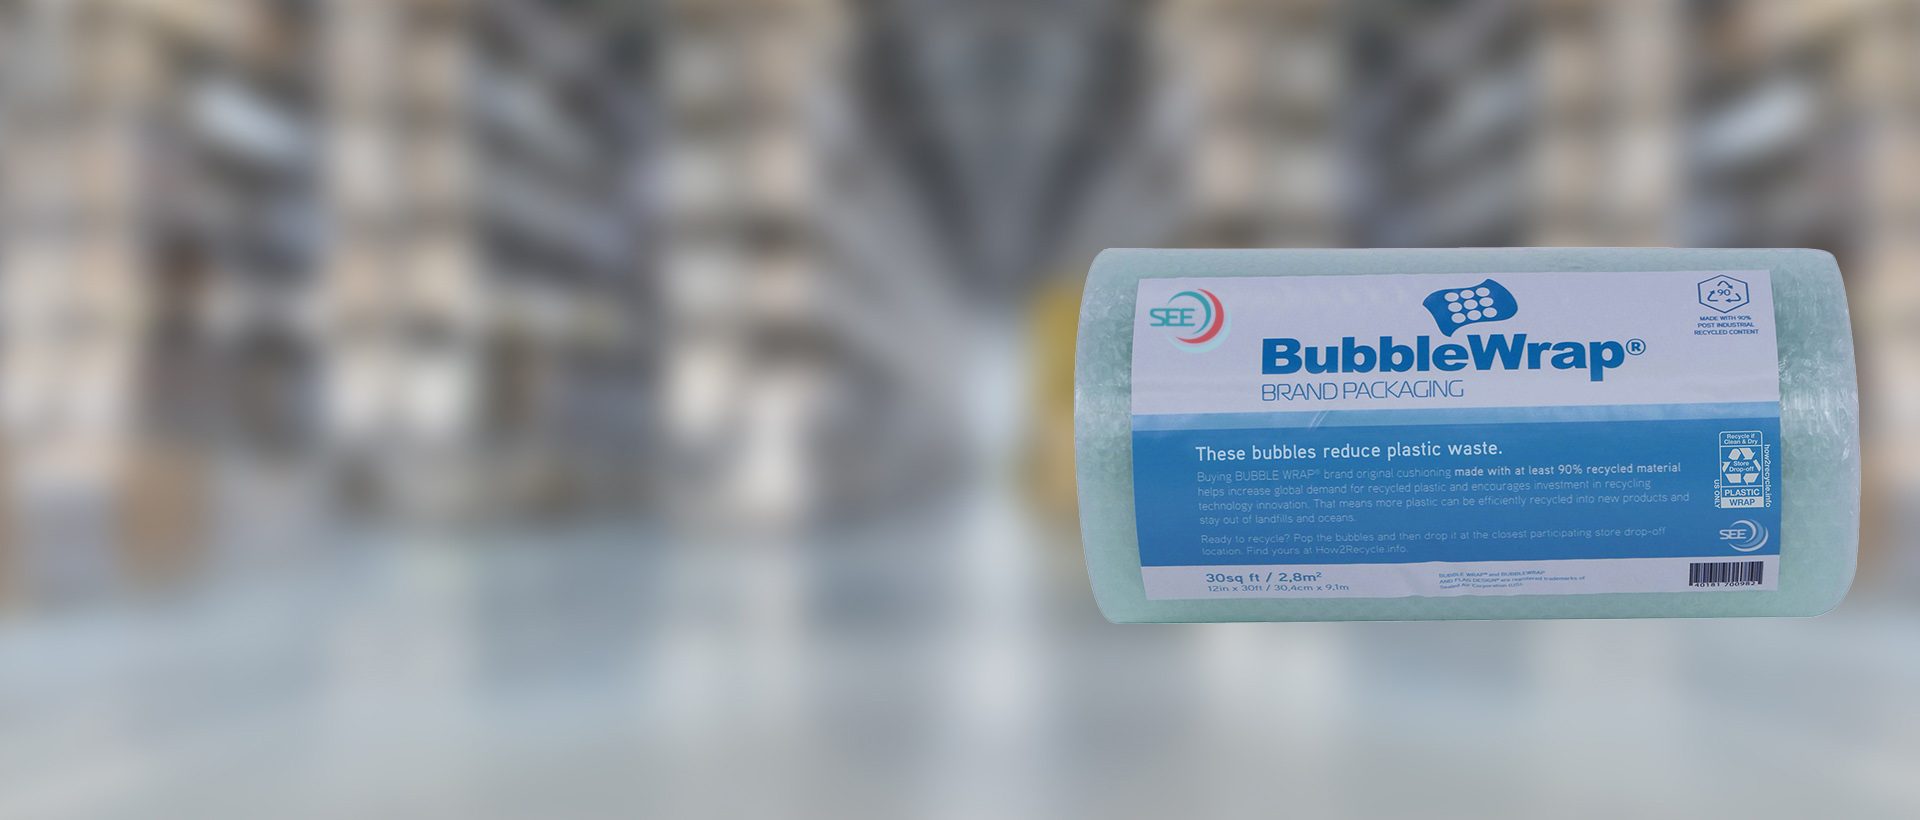 Film à bulles à base de contenu recyclé de la marque Bubble Wrap